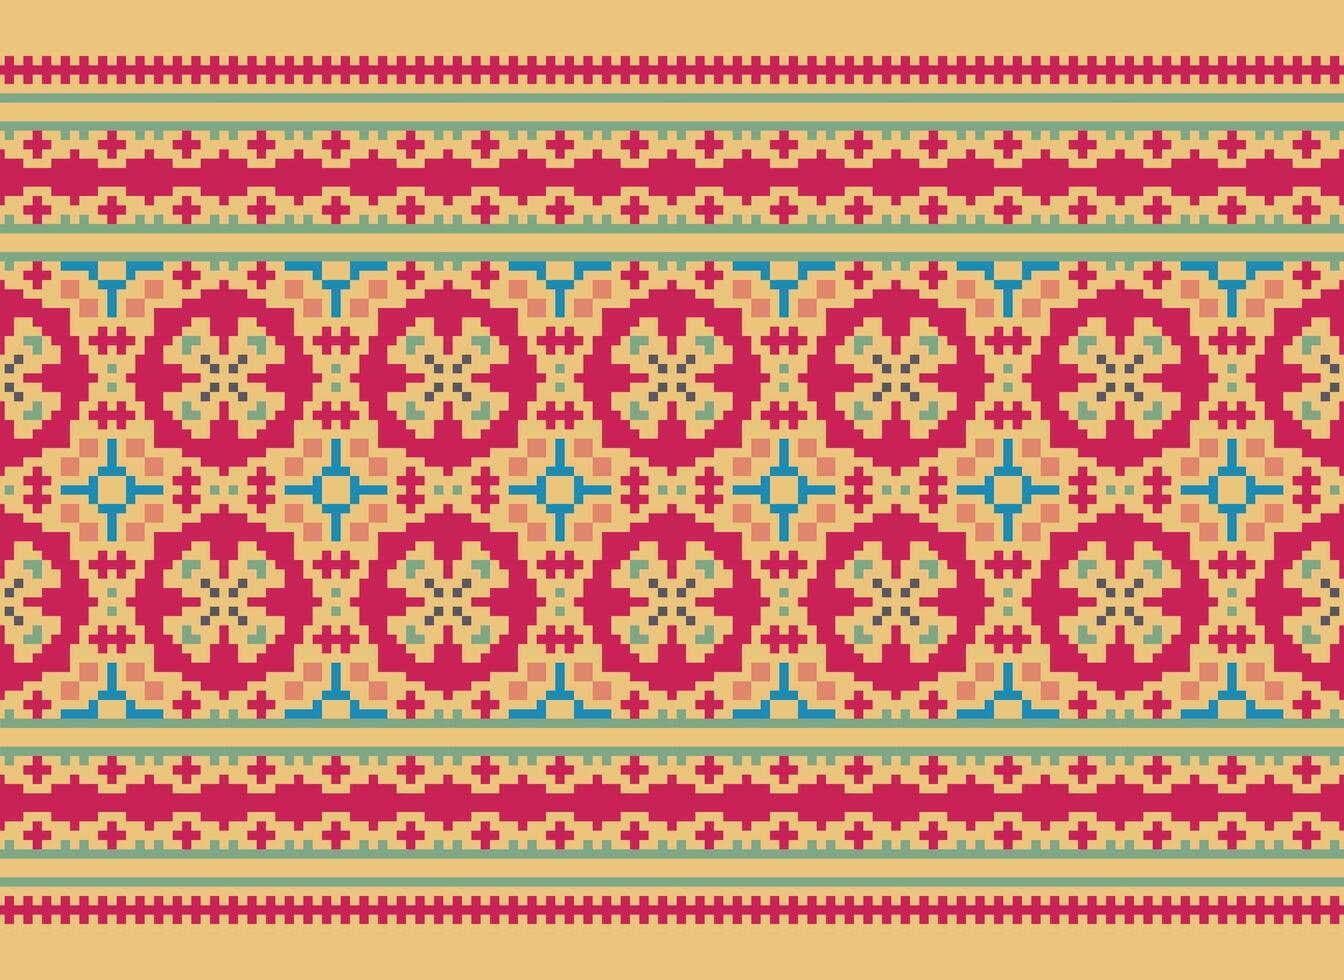 Afrikaanse kruis steek borduurwerk Aan achtergrond.geometrisch etnisch oosters naadloos patroon traditioneel.azteken stijl abstract vector illustratie.ontwerp voor textuur, stof, kleding, verpakking, tapijt.